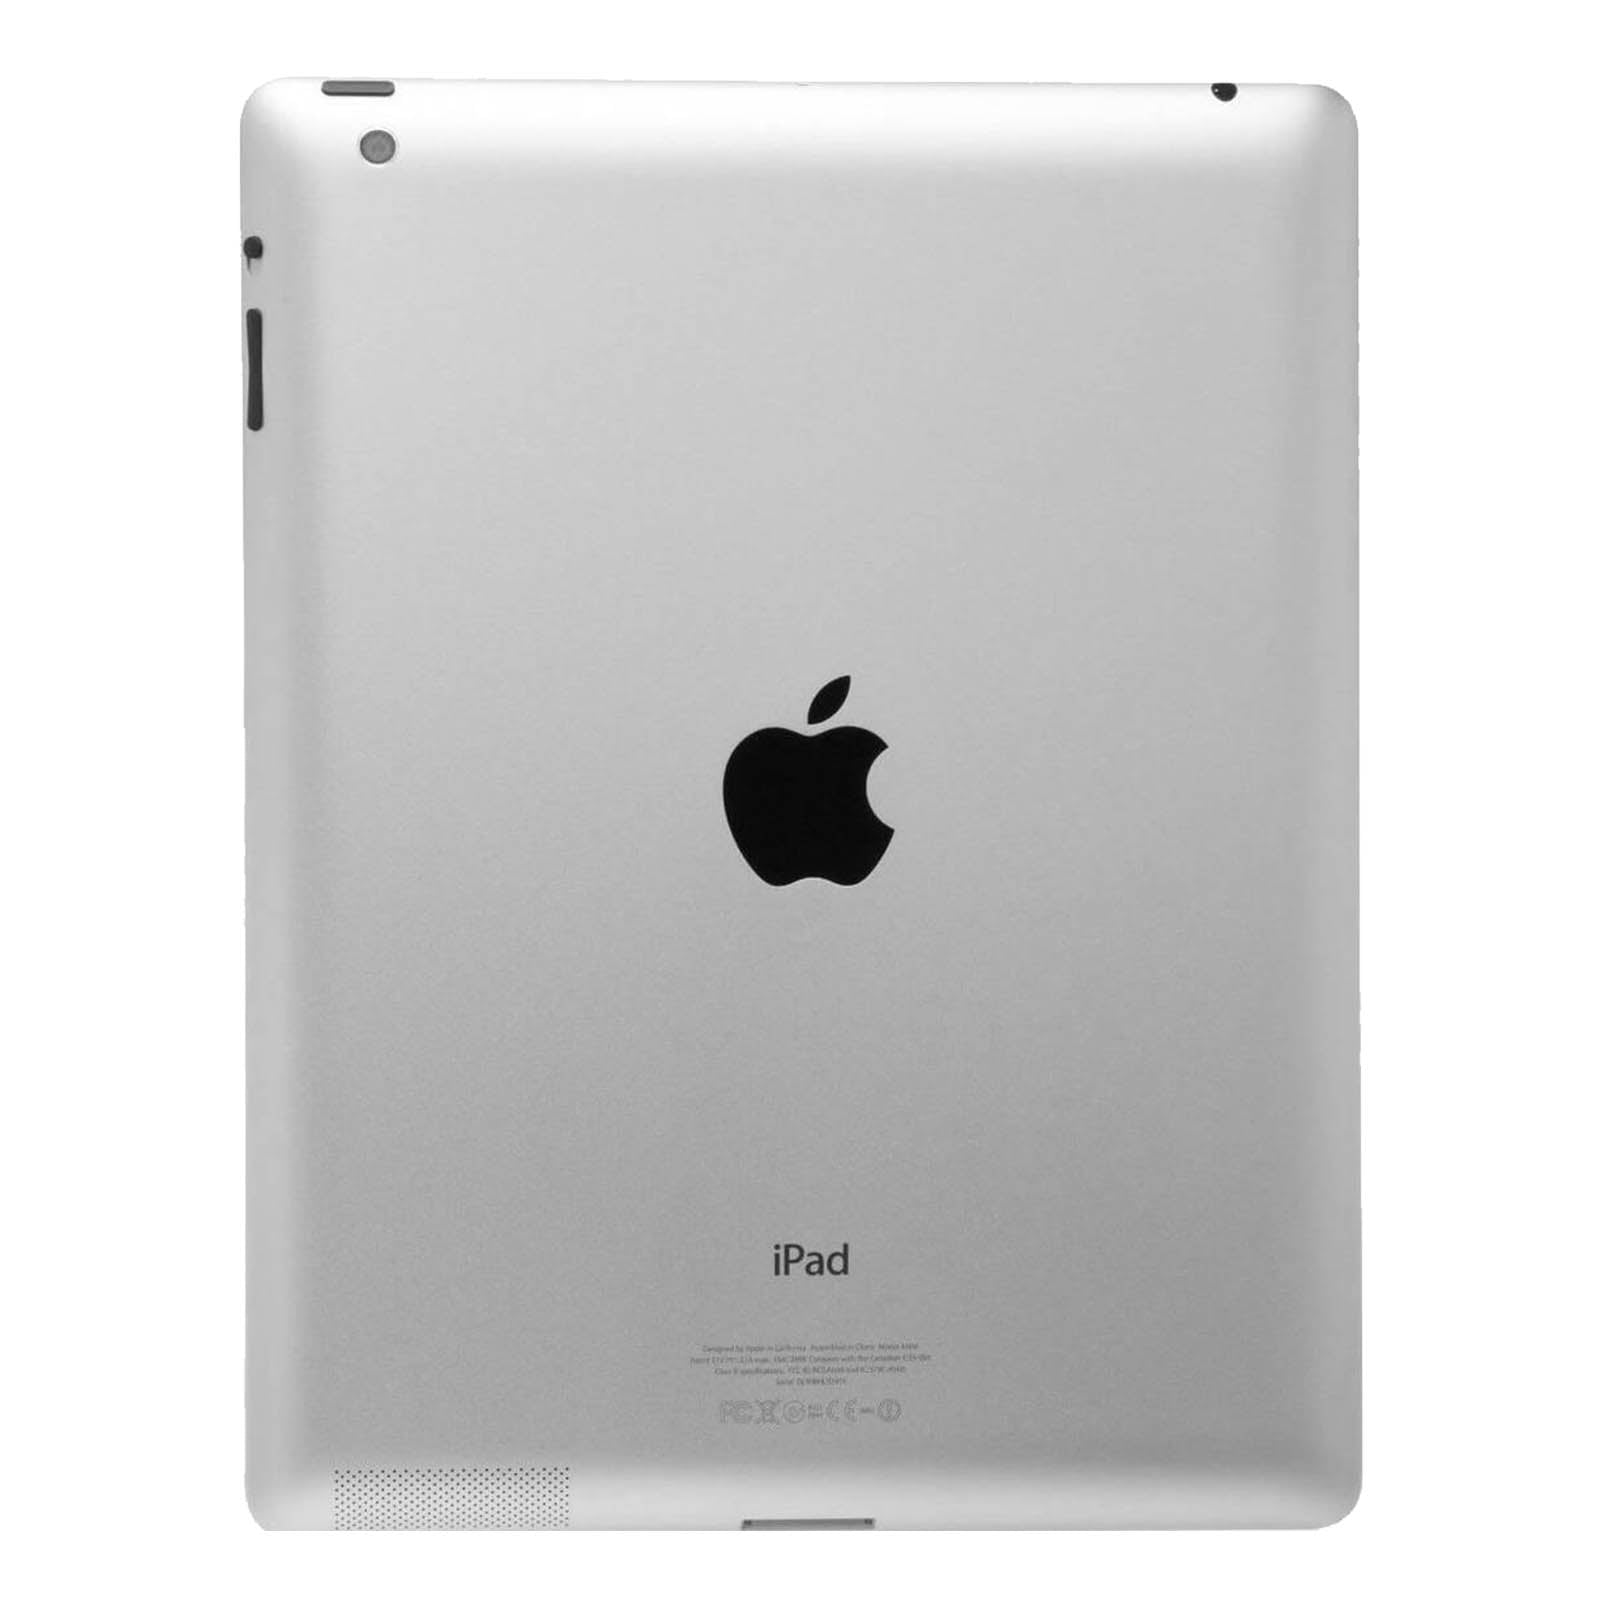 iPad 3 64GB WiFi Schwarz Gut WiFi